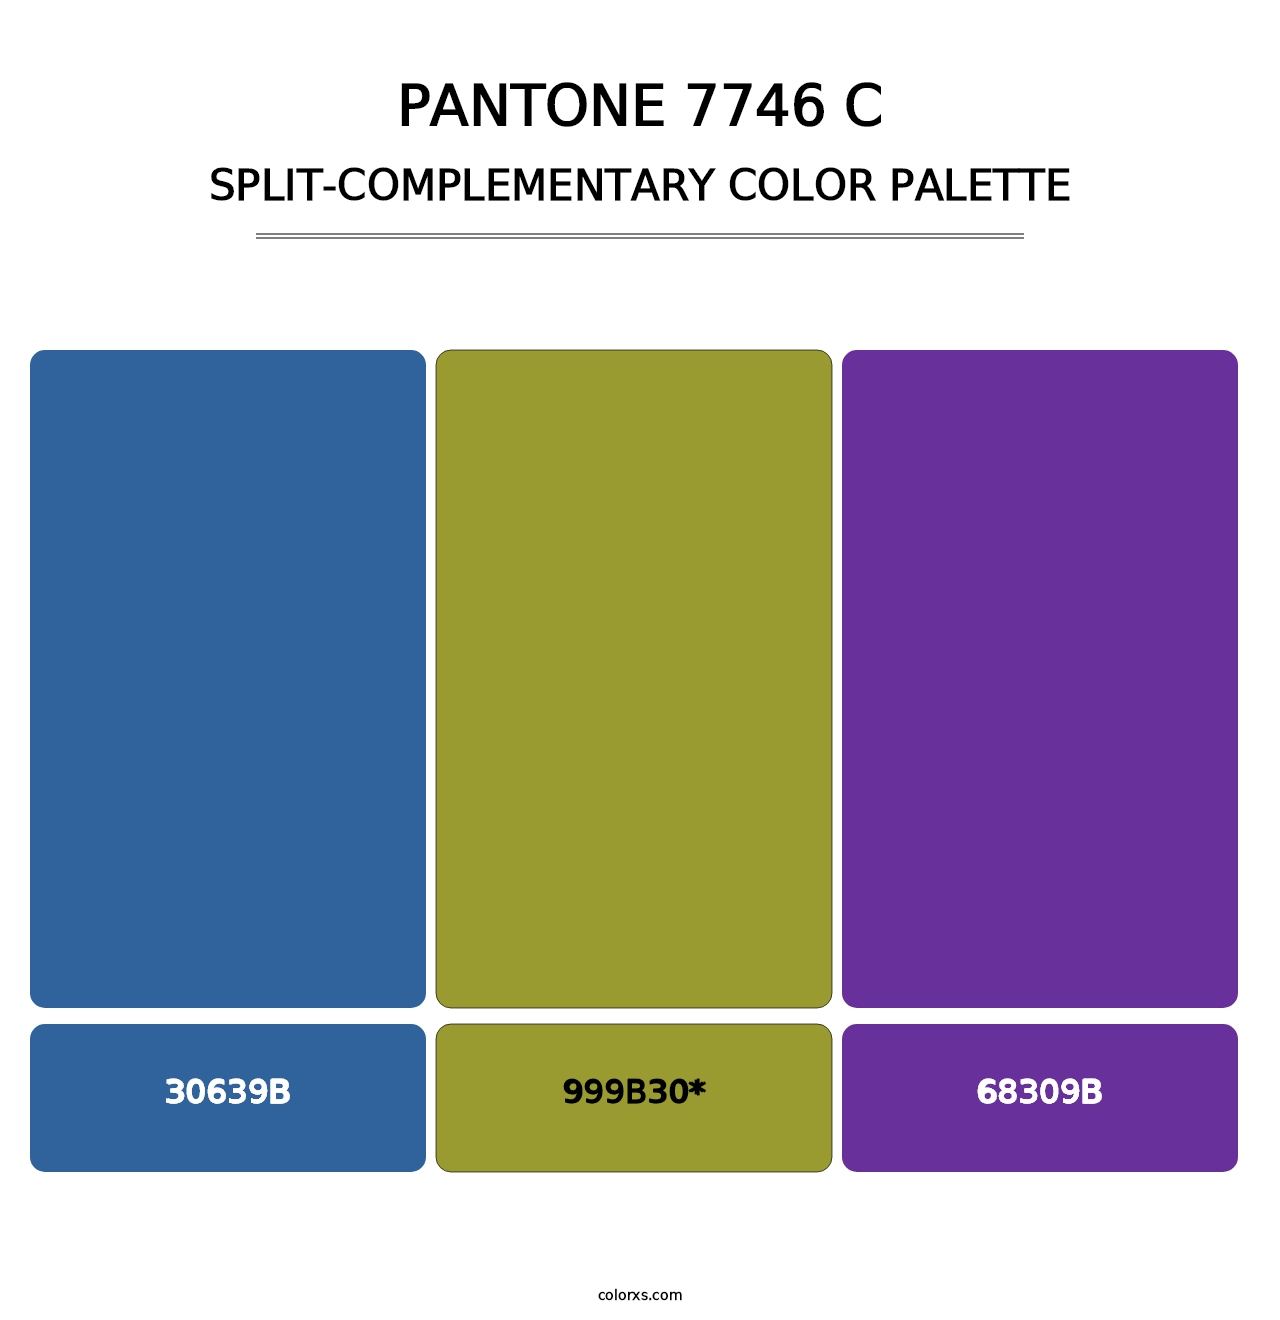 PANTONE 7746 C - Split-Complementary Color Palette